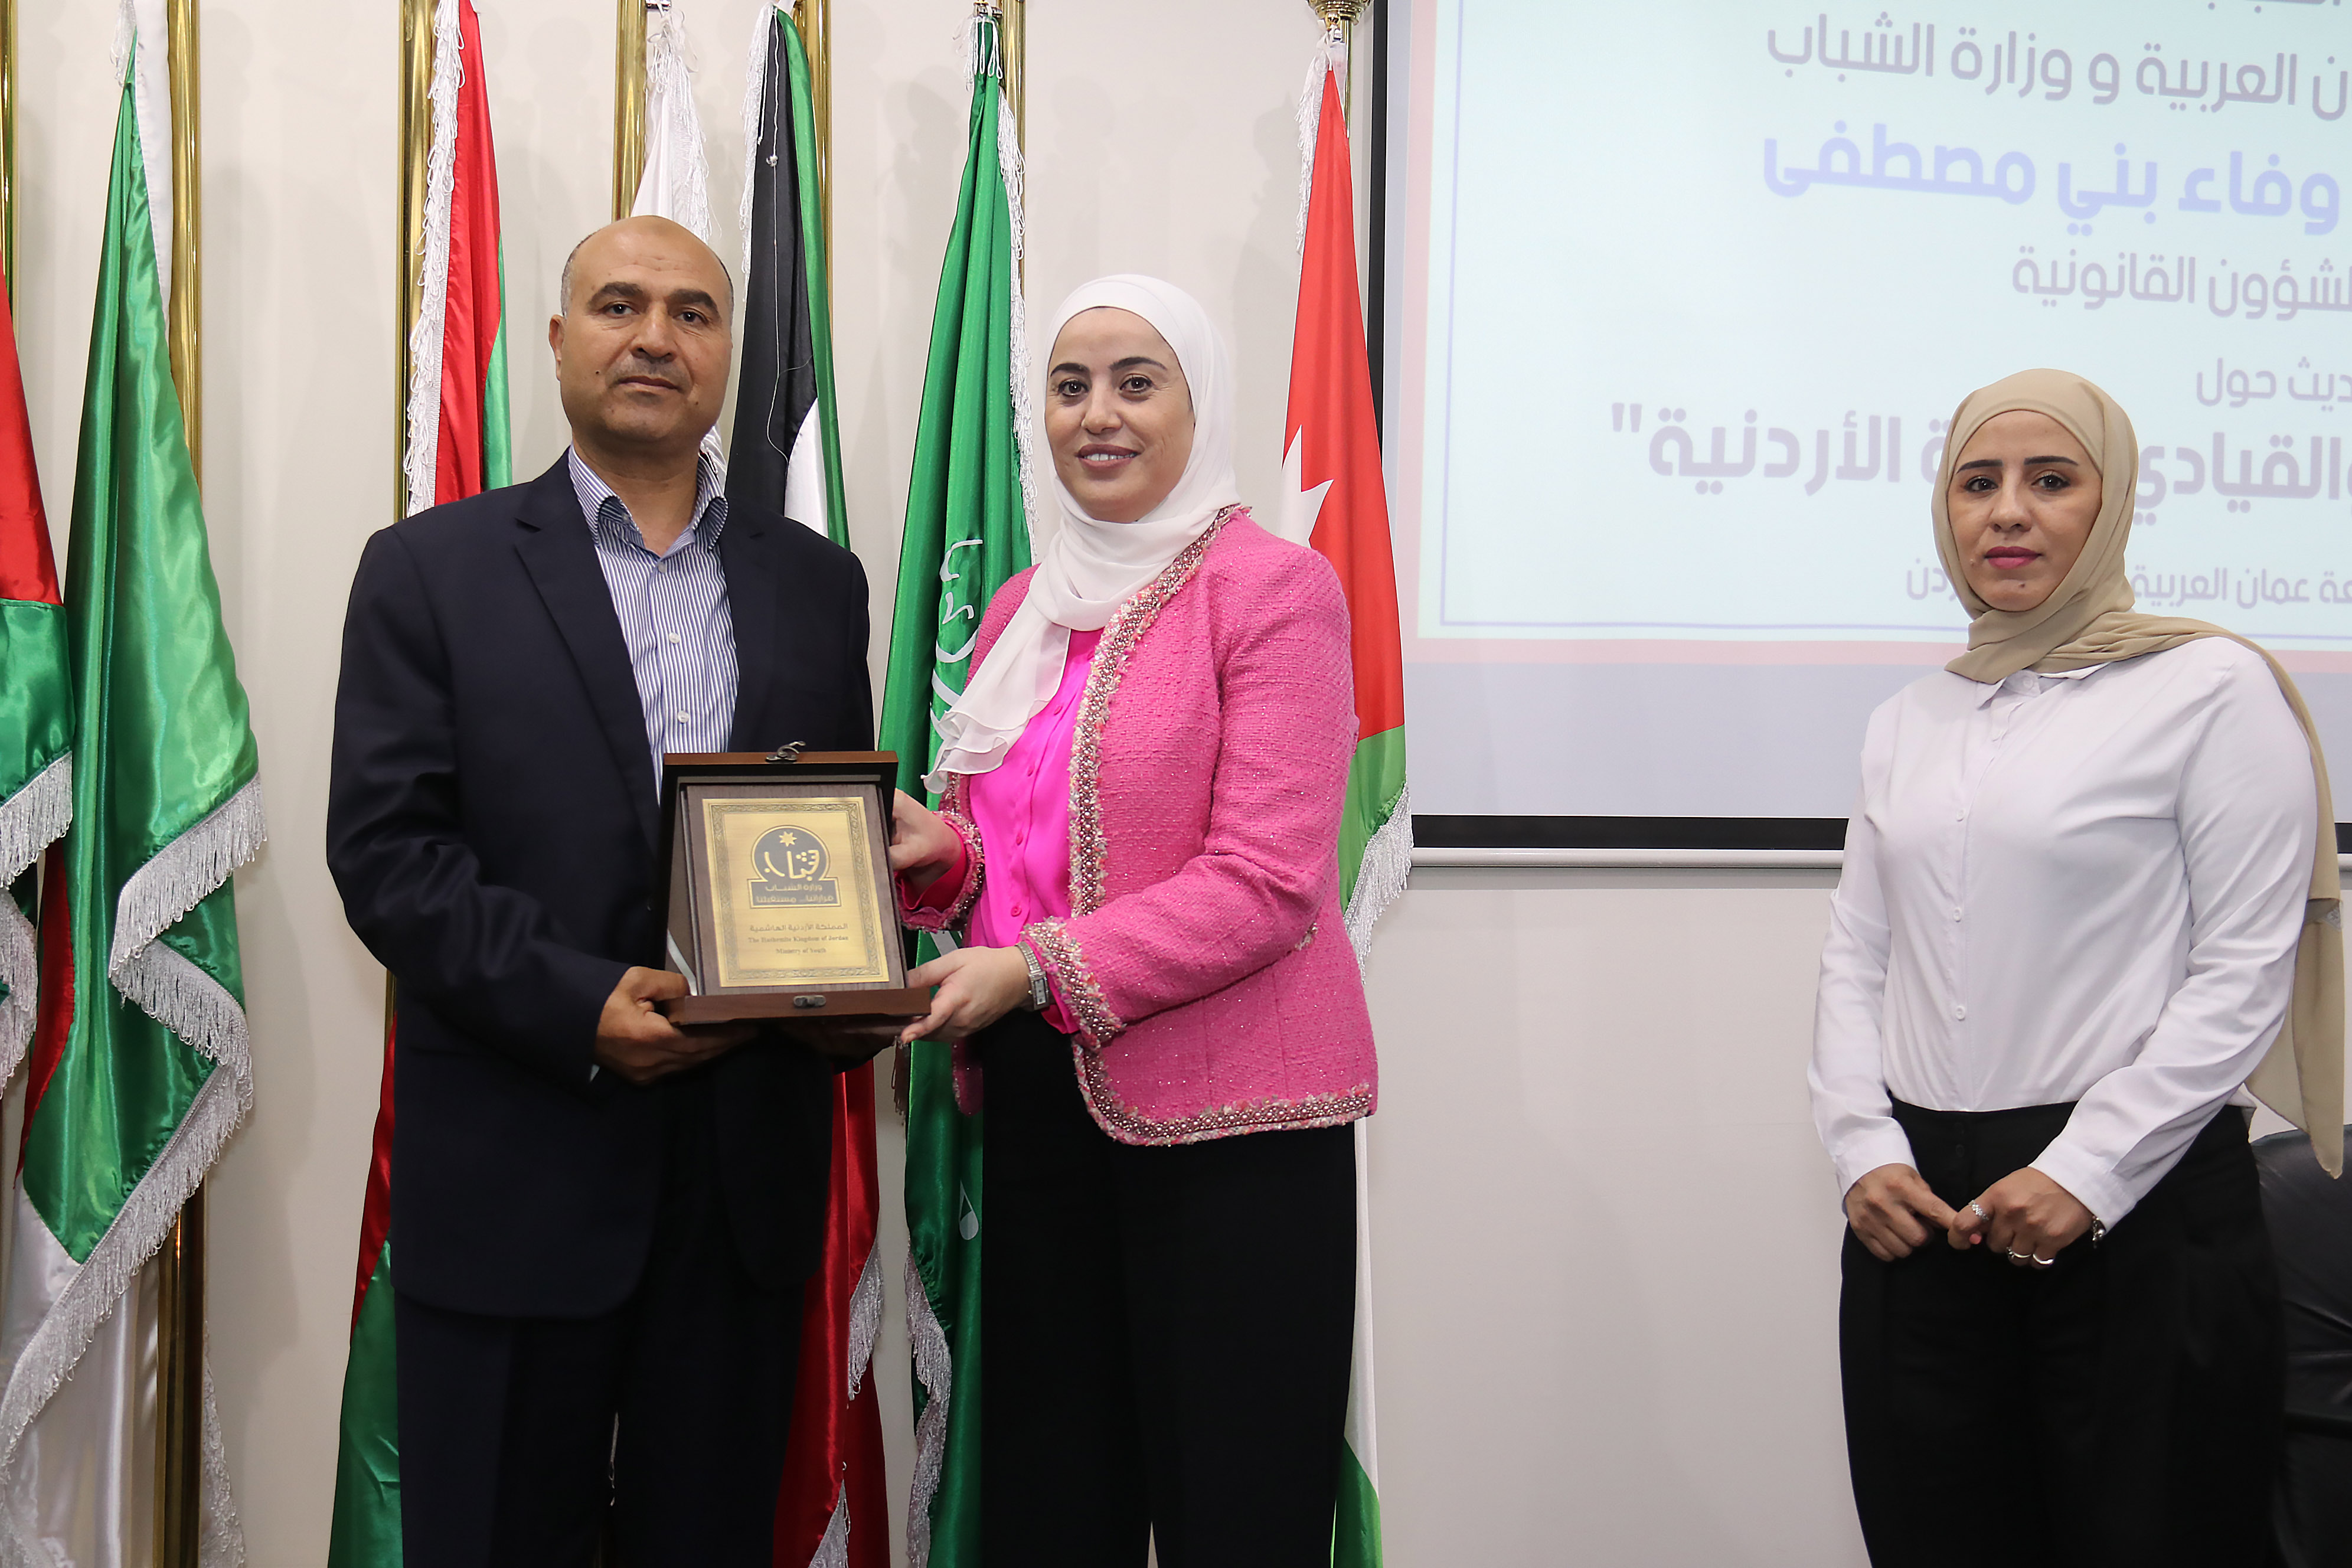 ندوة "التمكين السياسي والقيادي للمرأة الأردنية" في عمان العربية12